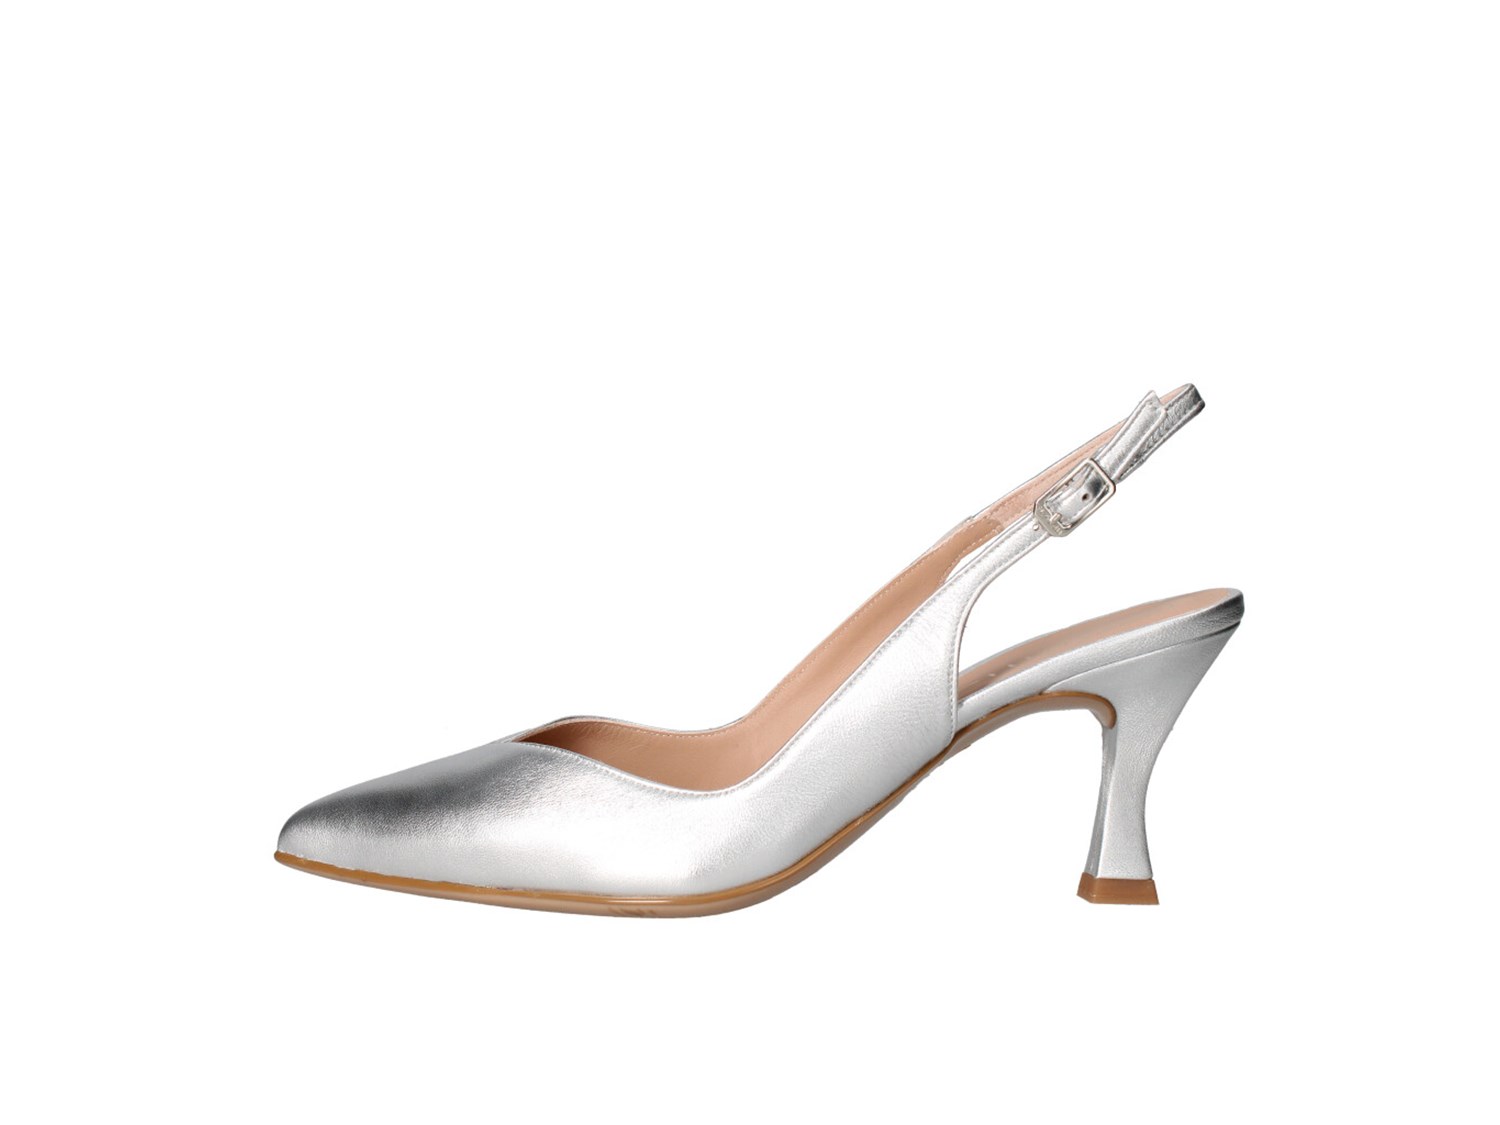 Unisa Karde Silver Shoes Women Heels'